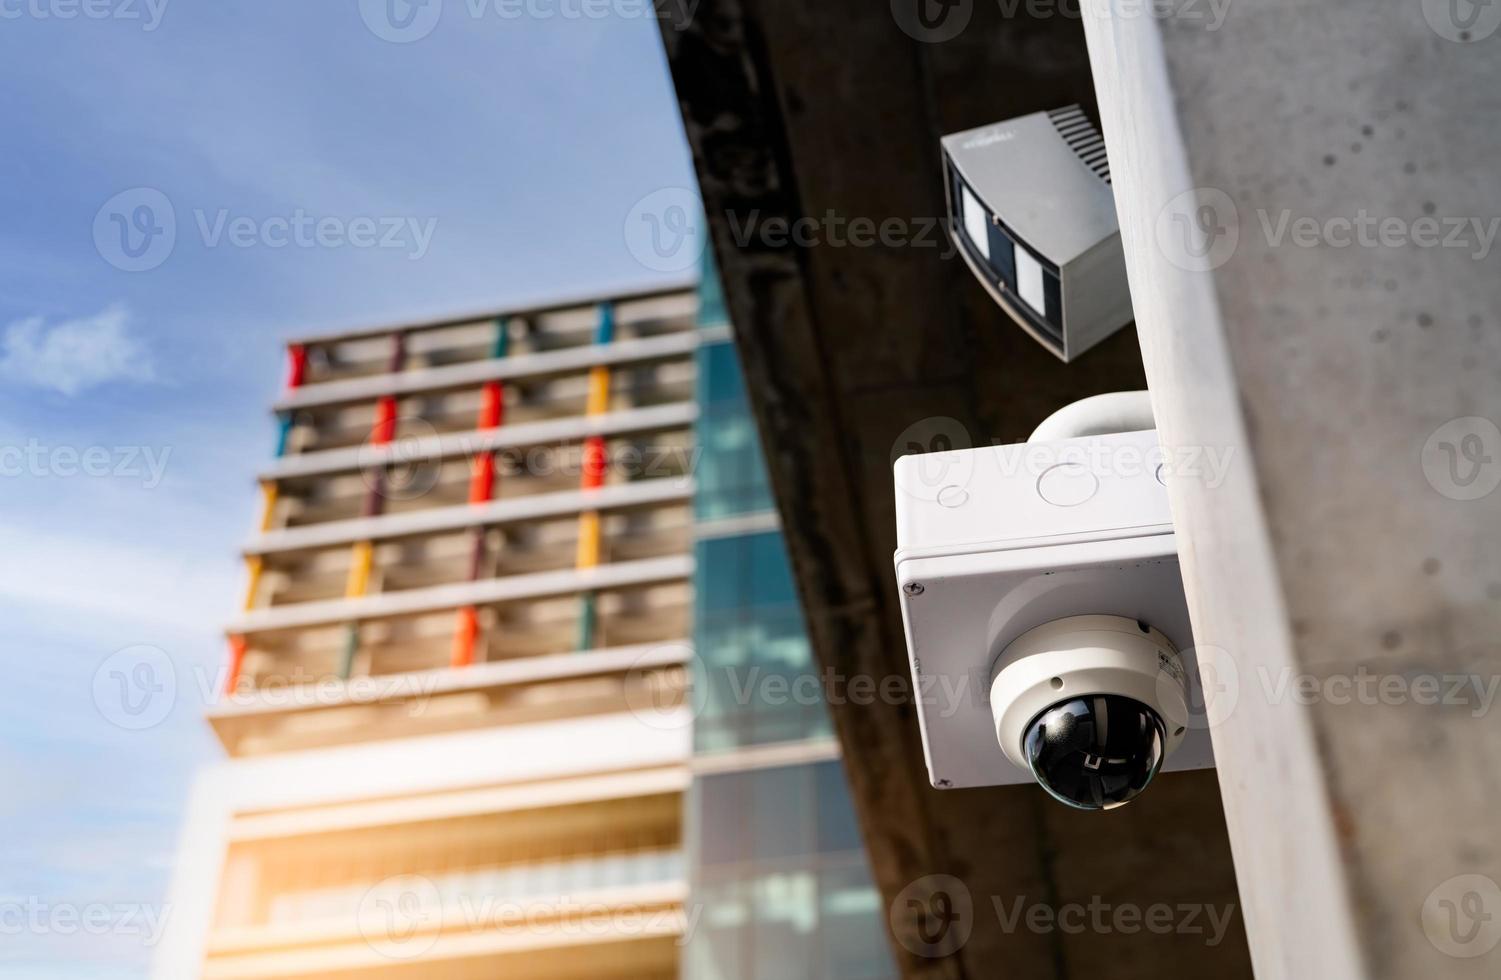 CCTV bewakingscamera videosysteem voor veiligheid geïnstalleerd buiten kantoorgebouw. gesloten televisiecircuit. cctv elektronisch beveiligingssysteem. politie uitrusting. technologie voor videobewakingscamera's. foto